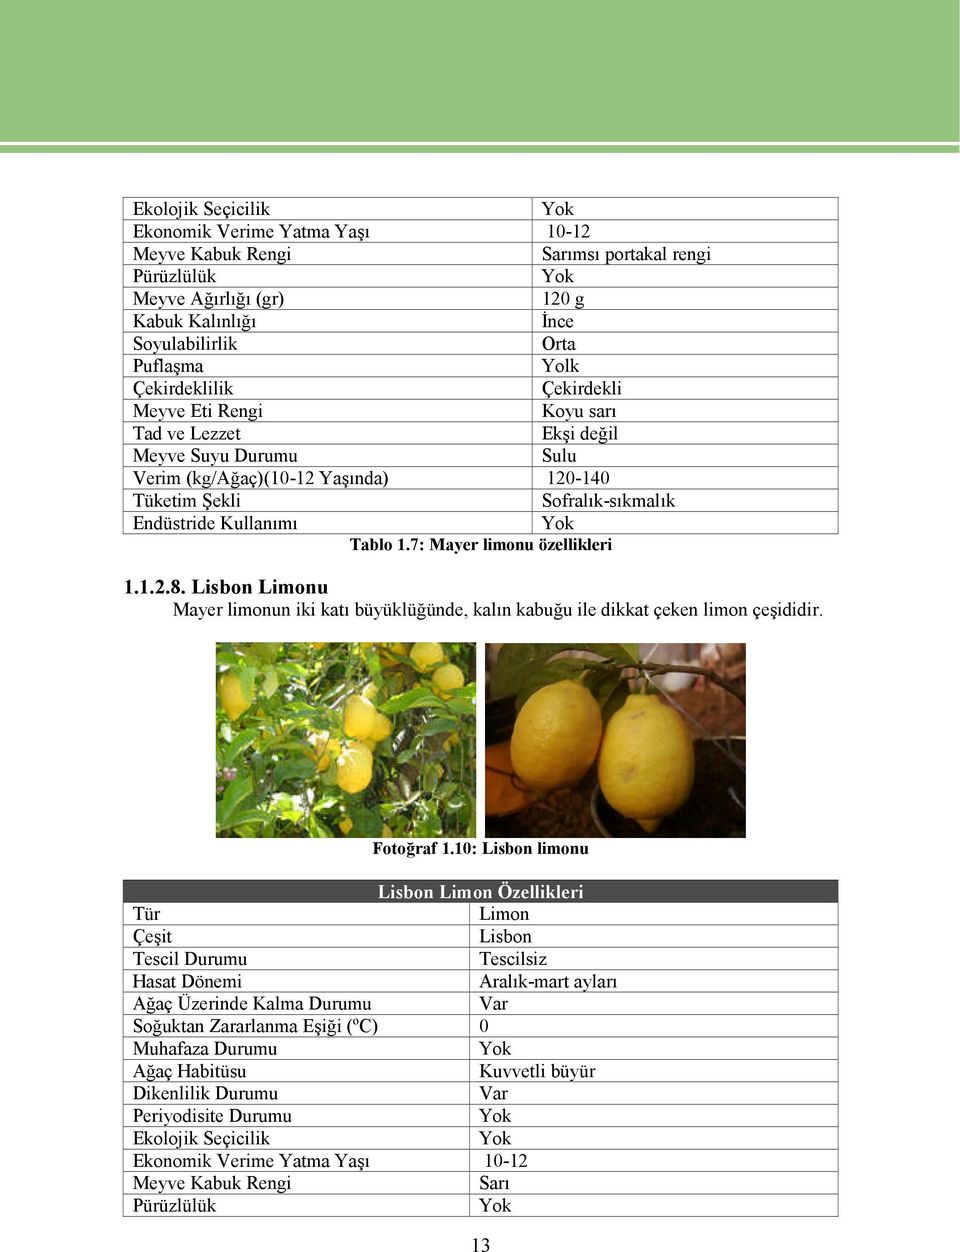 Tablo 1.7: Mayer limonu özellikleri 1.1.2.8. Lisbon Limonu Mayer limonun iki katı büyüklüğünde, kalın kabuğu ile dikkat çeken limon çeşididir. Fotoğraf 1.